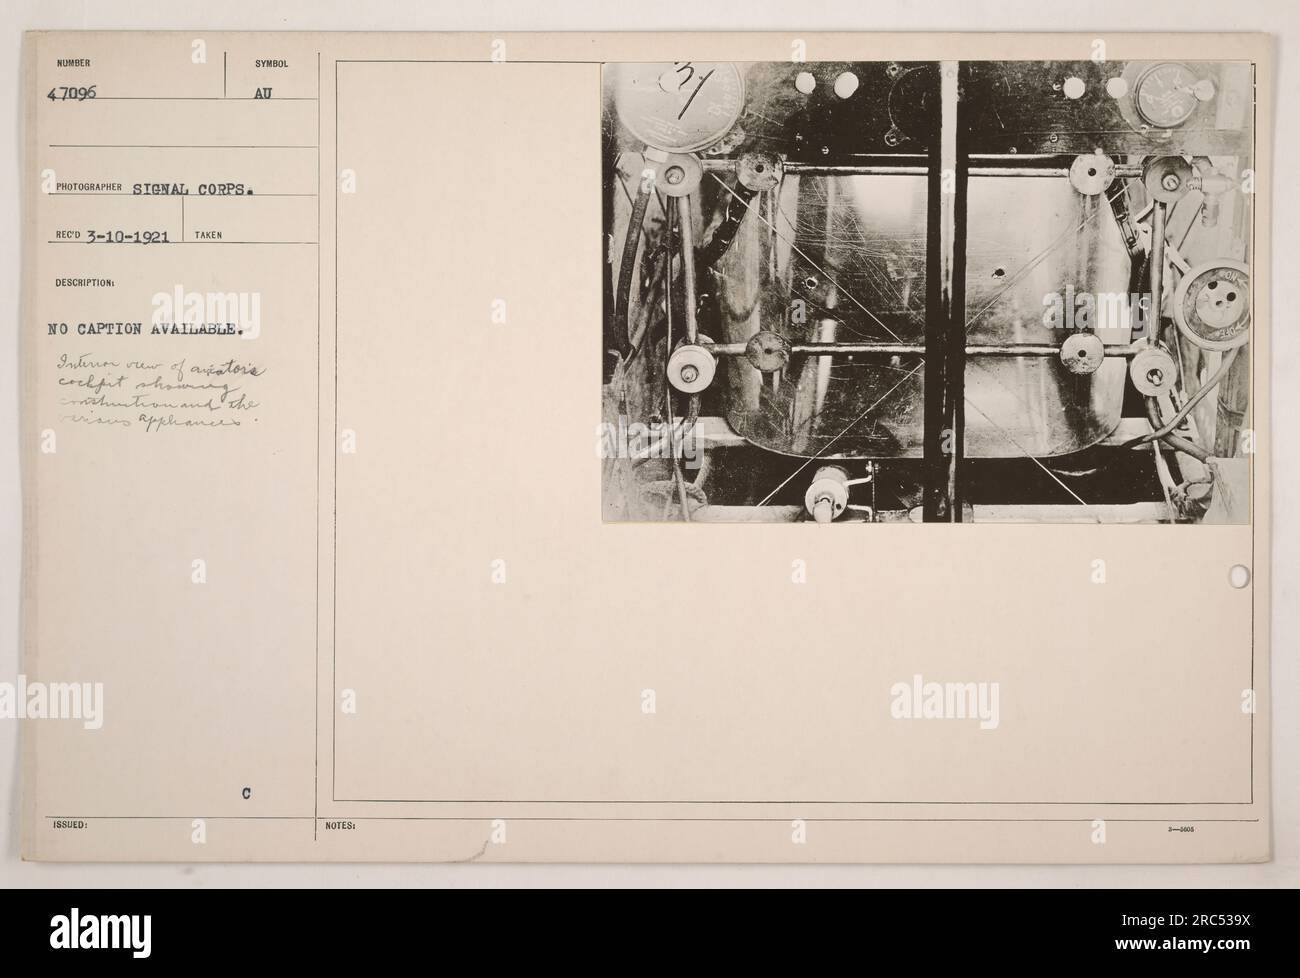 Innenansicht des Pilotencockpits während des Ersten Weltkriegs. Dieses Foto, Nummer 4,7096, wurde von einem Fotografen des Signalkorps aufgenommen. Die Beschreibung besagt, dass keine Beschriftung verfügbar ist. Die Abbildung zeigt das Layout des Cockpits und verschiedene Instrumente. Stockfoto